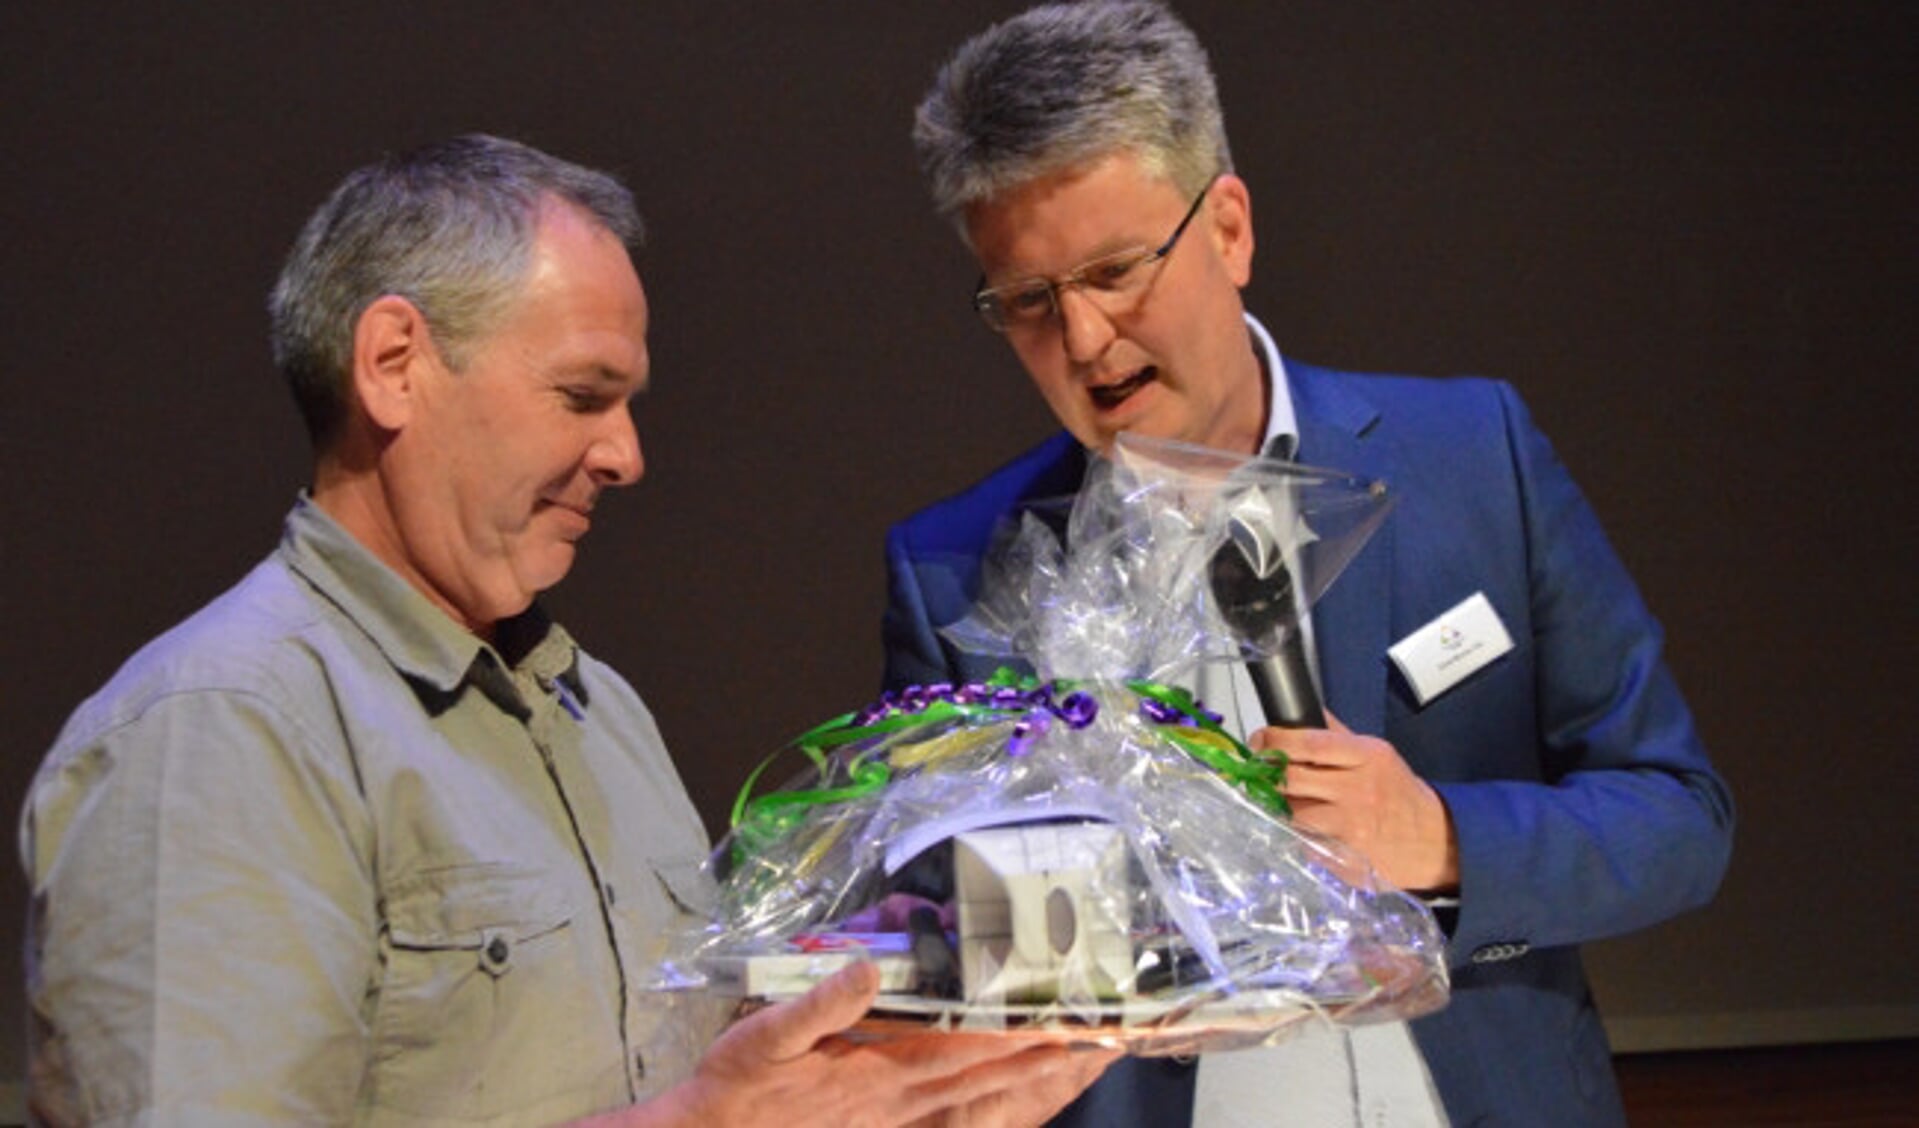  André van der Hulst (links) ontvangt het 'starterspakket' uit handen van wethouder Dirk Minne Vis.